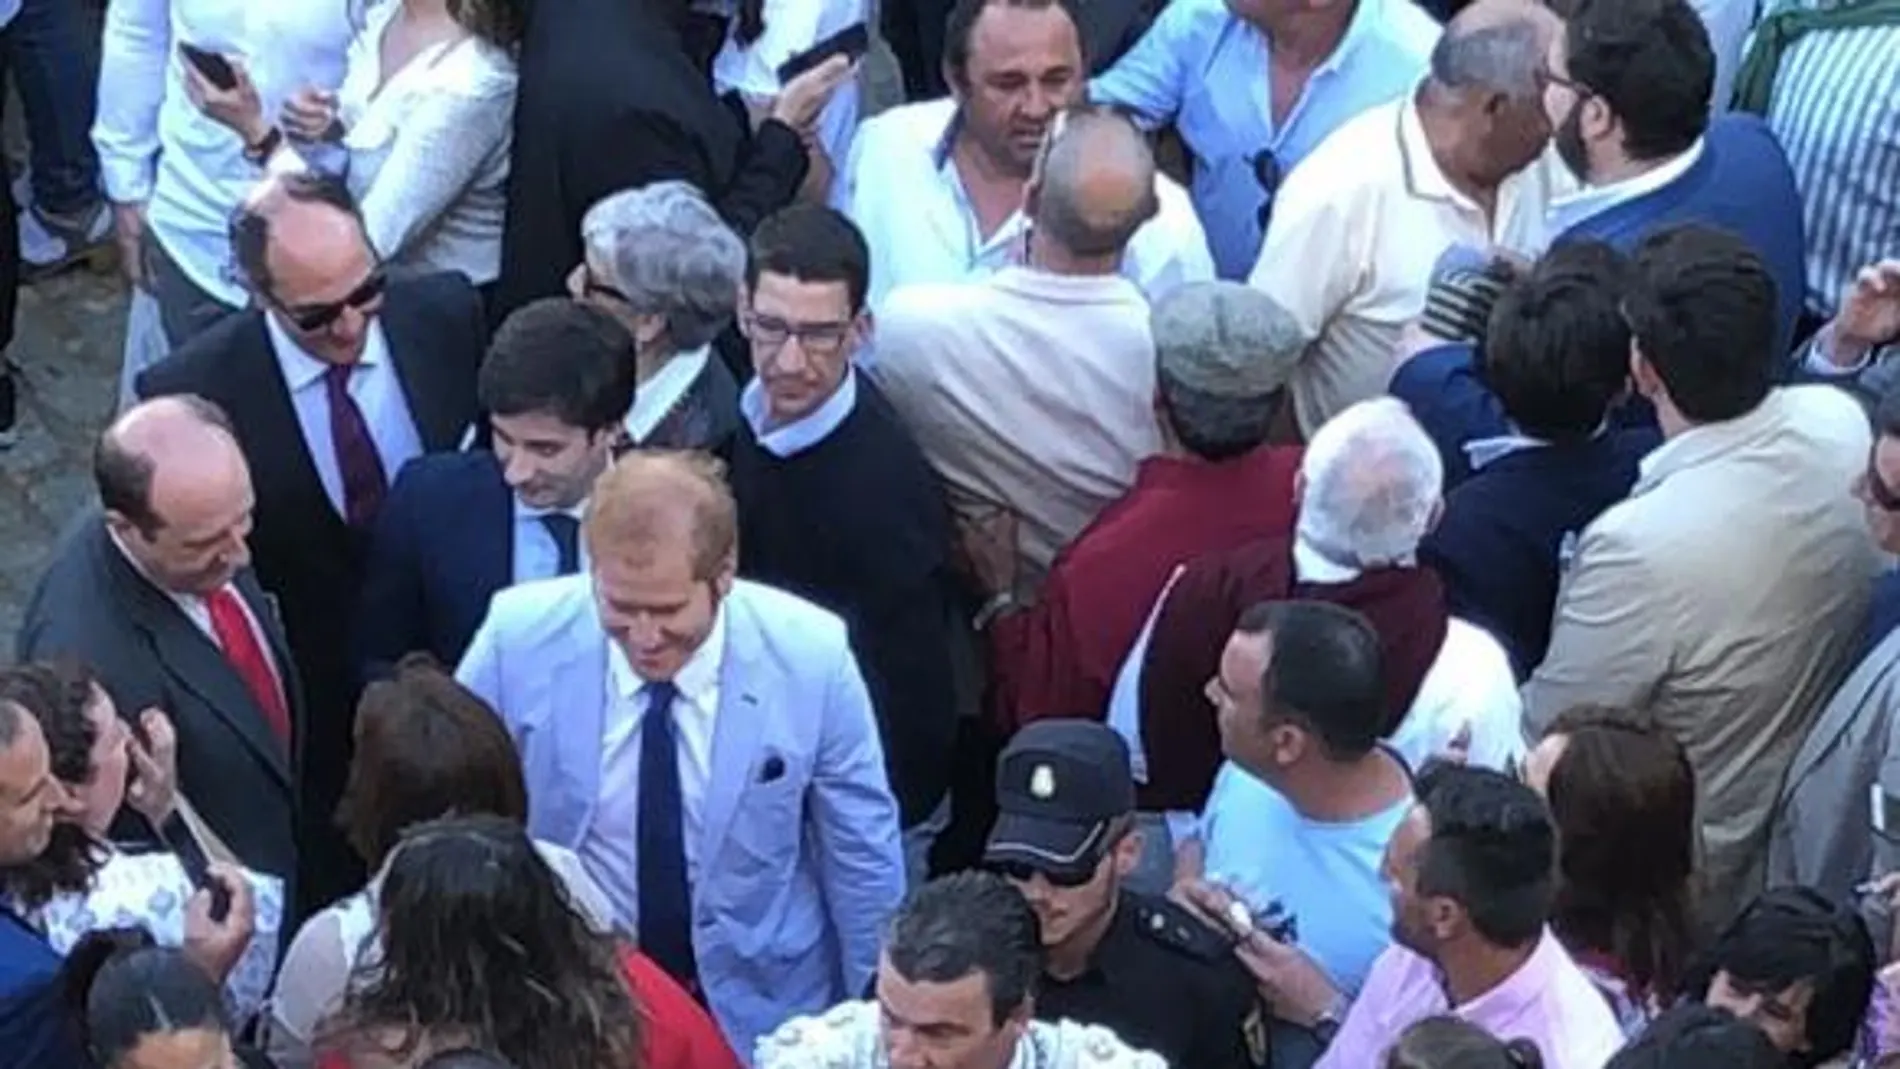 Morante de la Puebla entrando en el coso de Jerez rodeado de decenas de personas. FOTO: Ignacio García Díaz